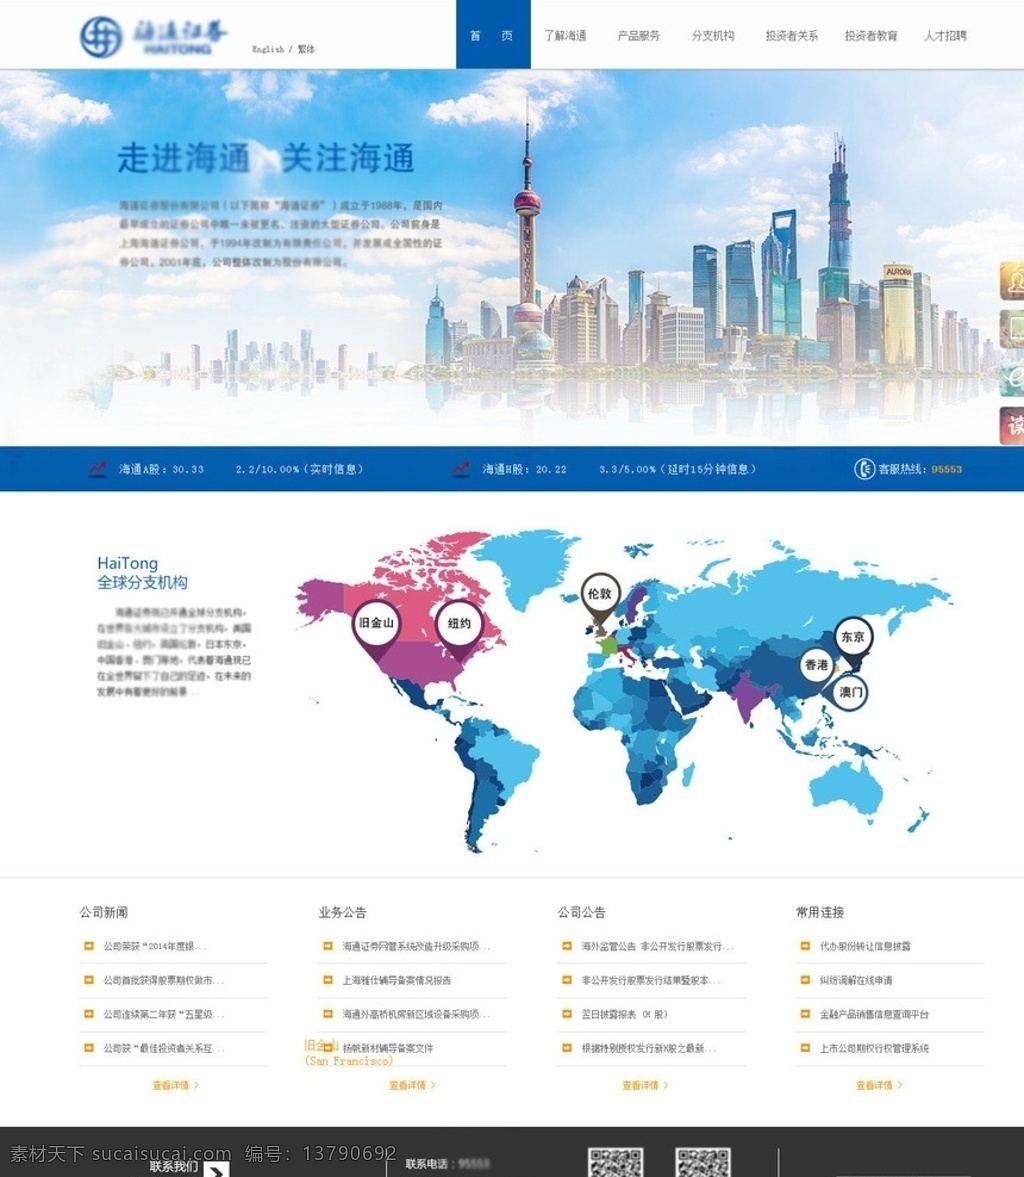 证券公司 网站首页 证券 股票 基金 个股期权 简洁 web 界面设计 中文模板